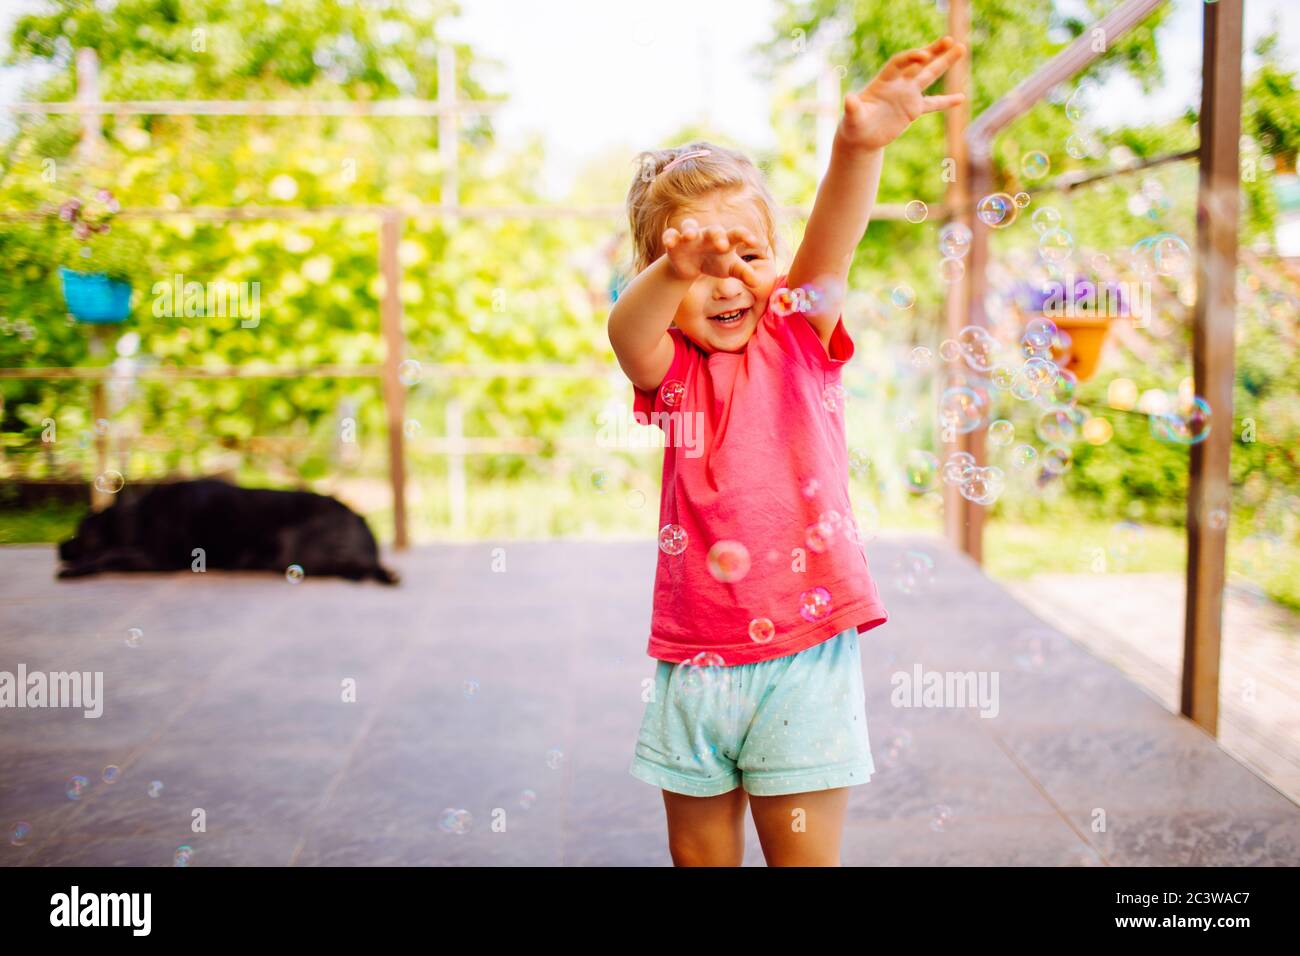 Kleine blonde Mädchen fangen eine Seife Blasen. Glückliche Kindheit, Sommerurlaub Konzept Stockfoto